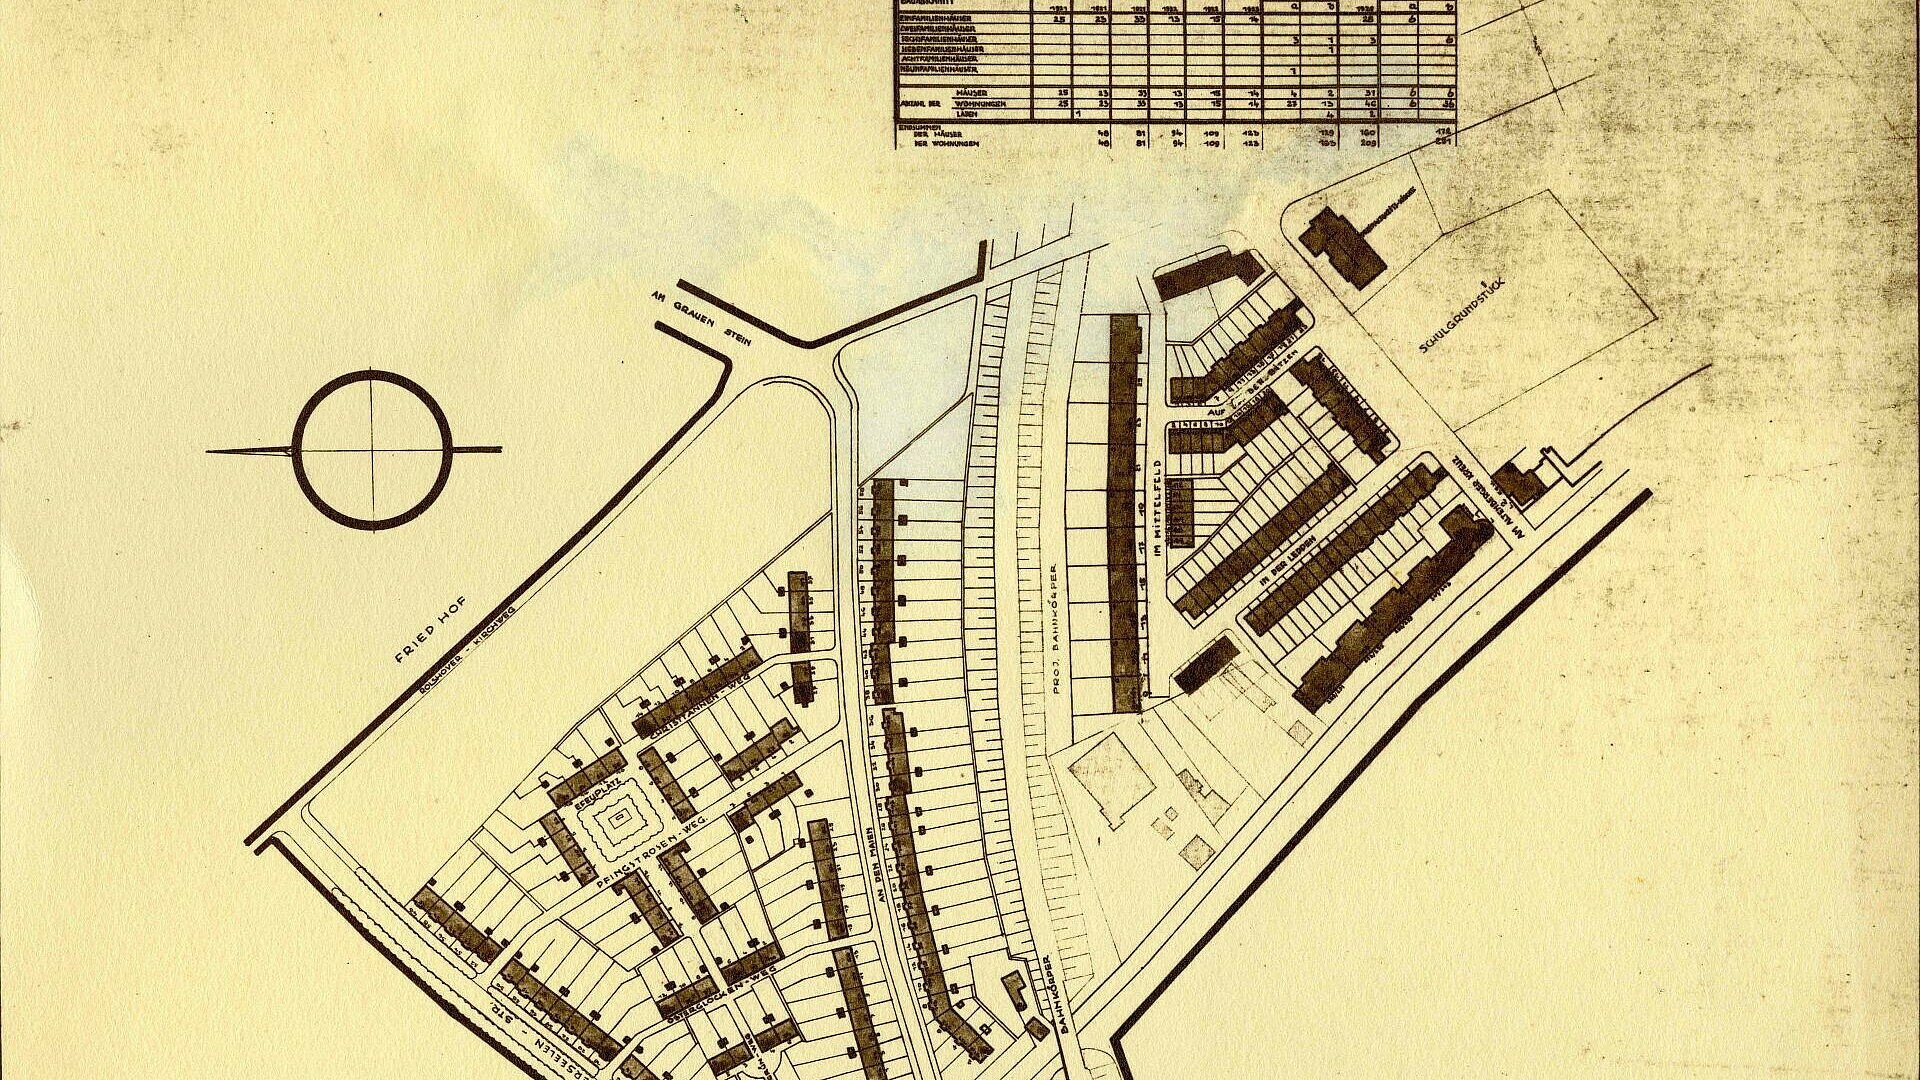 Historisches Bild einer Siedlungsskizze der Milchmädchensiedlung in Poll mit großen Gartenanlagen